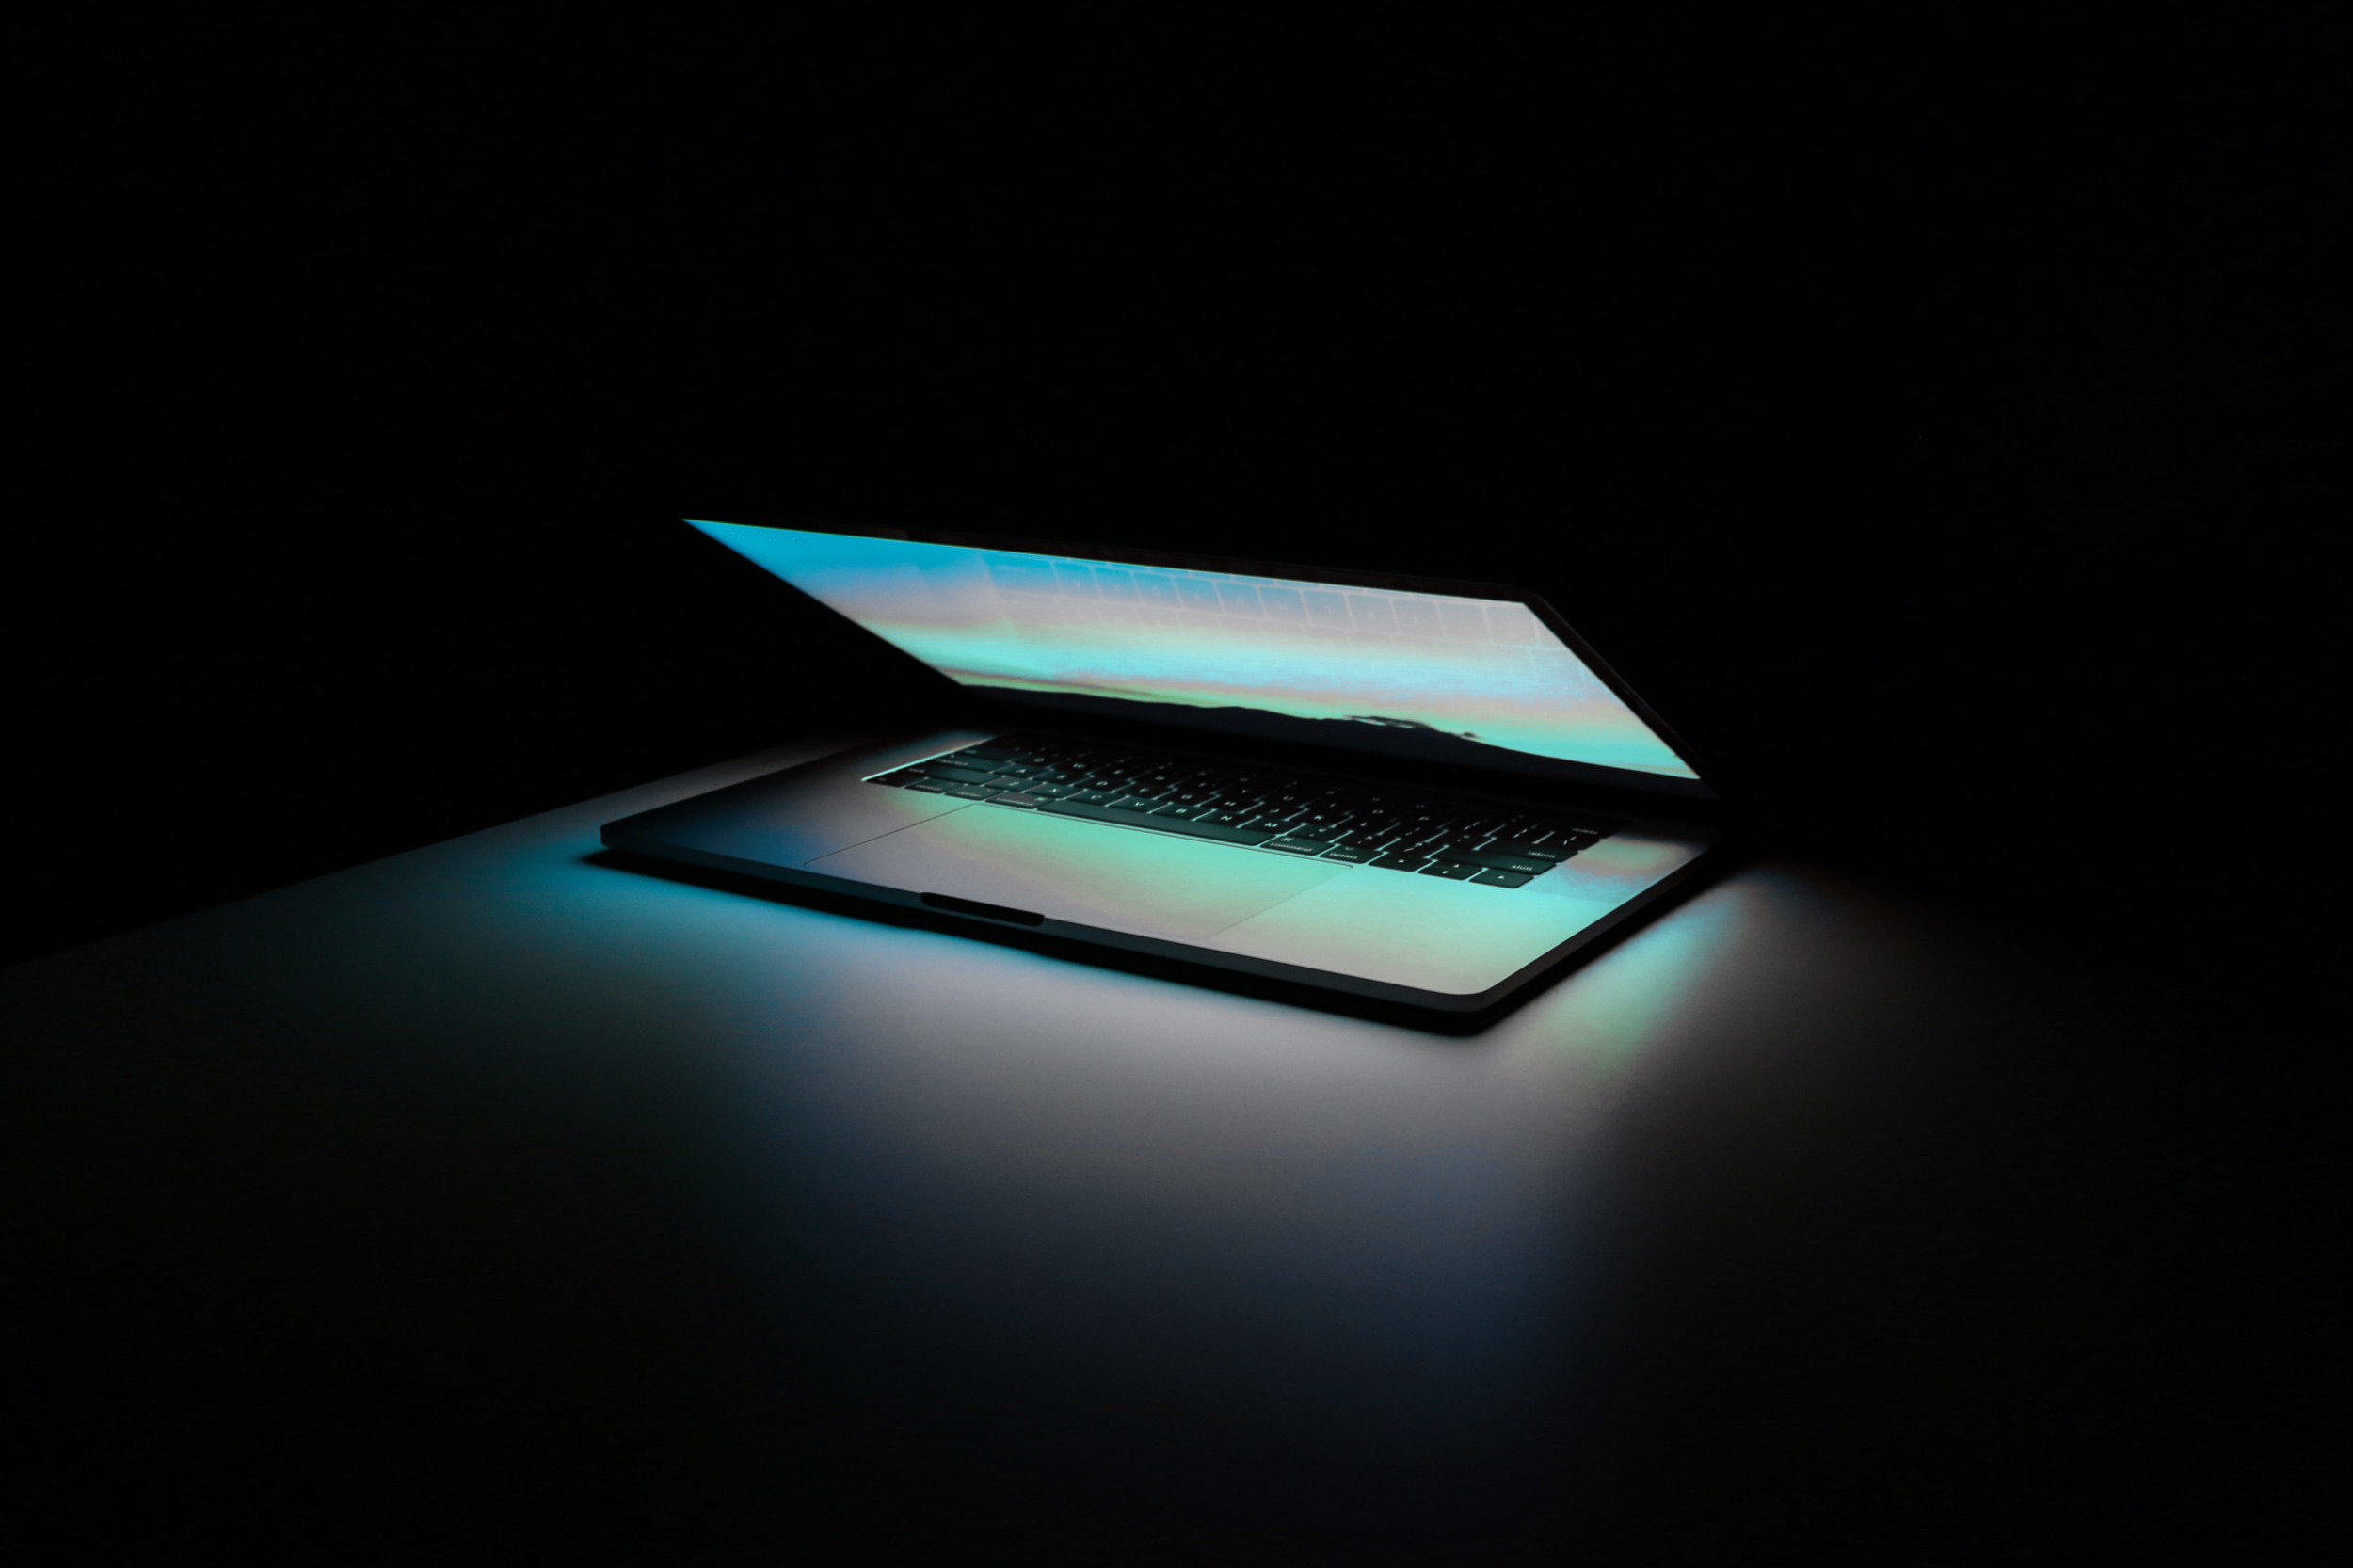 Leuchtendes Laptop im Dunkeln